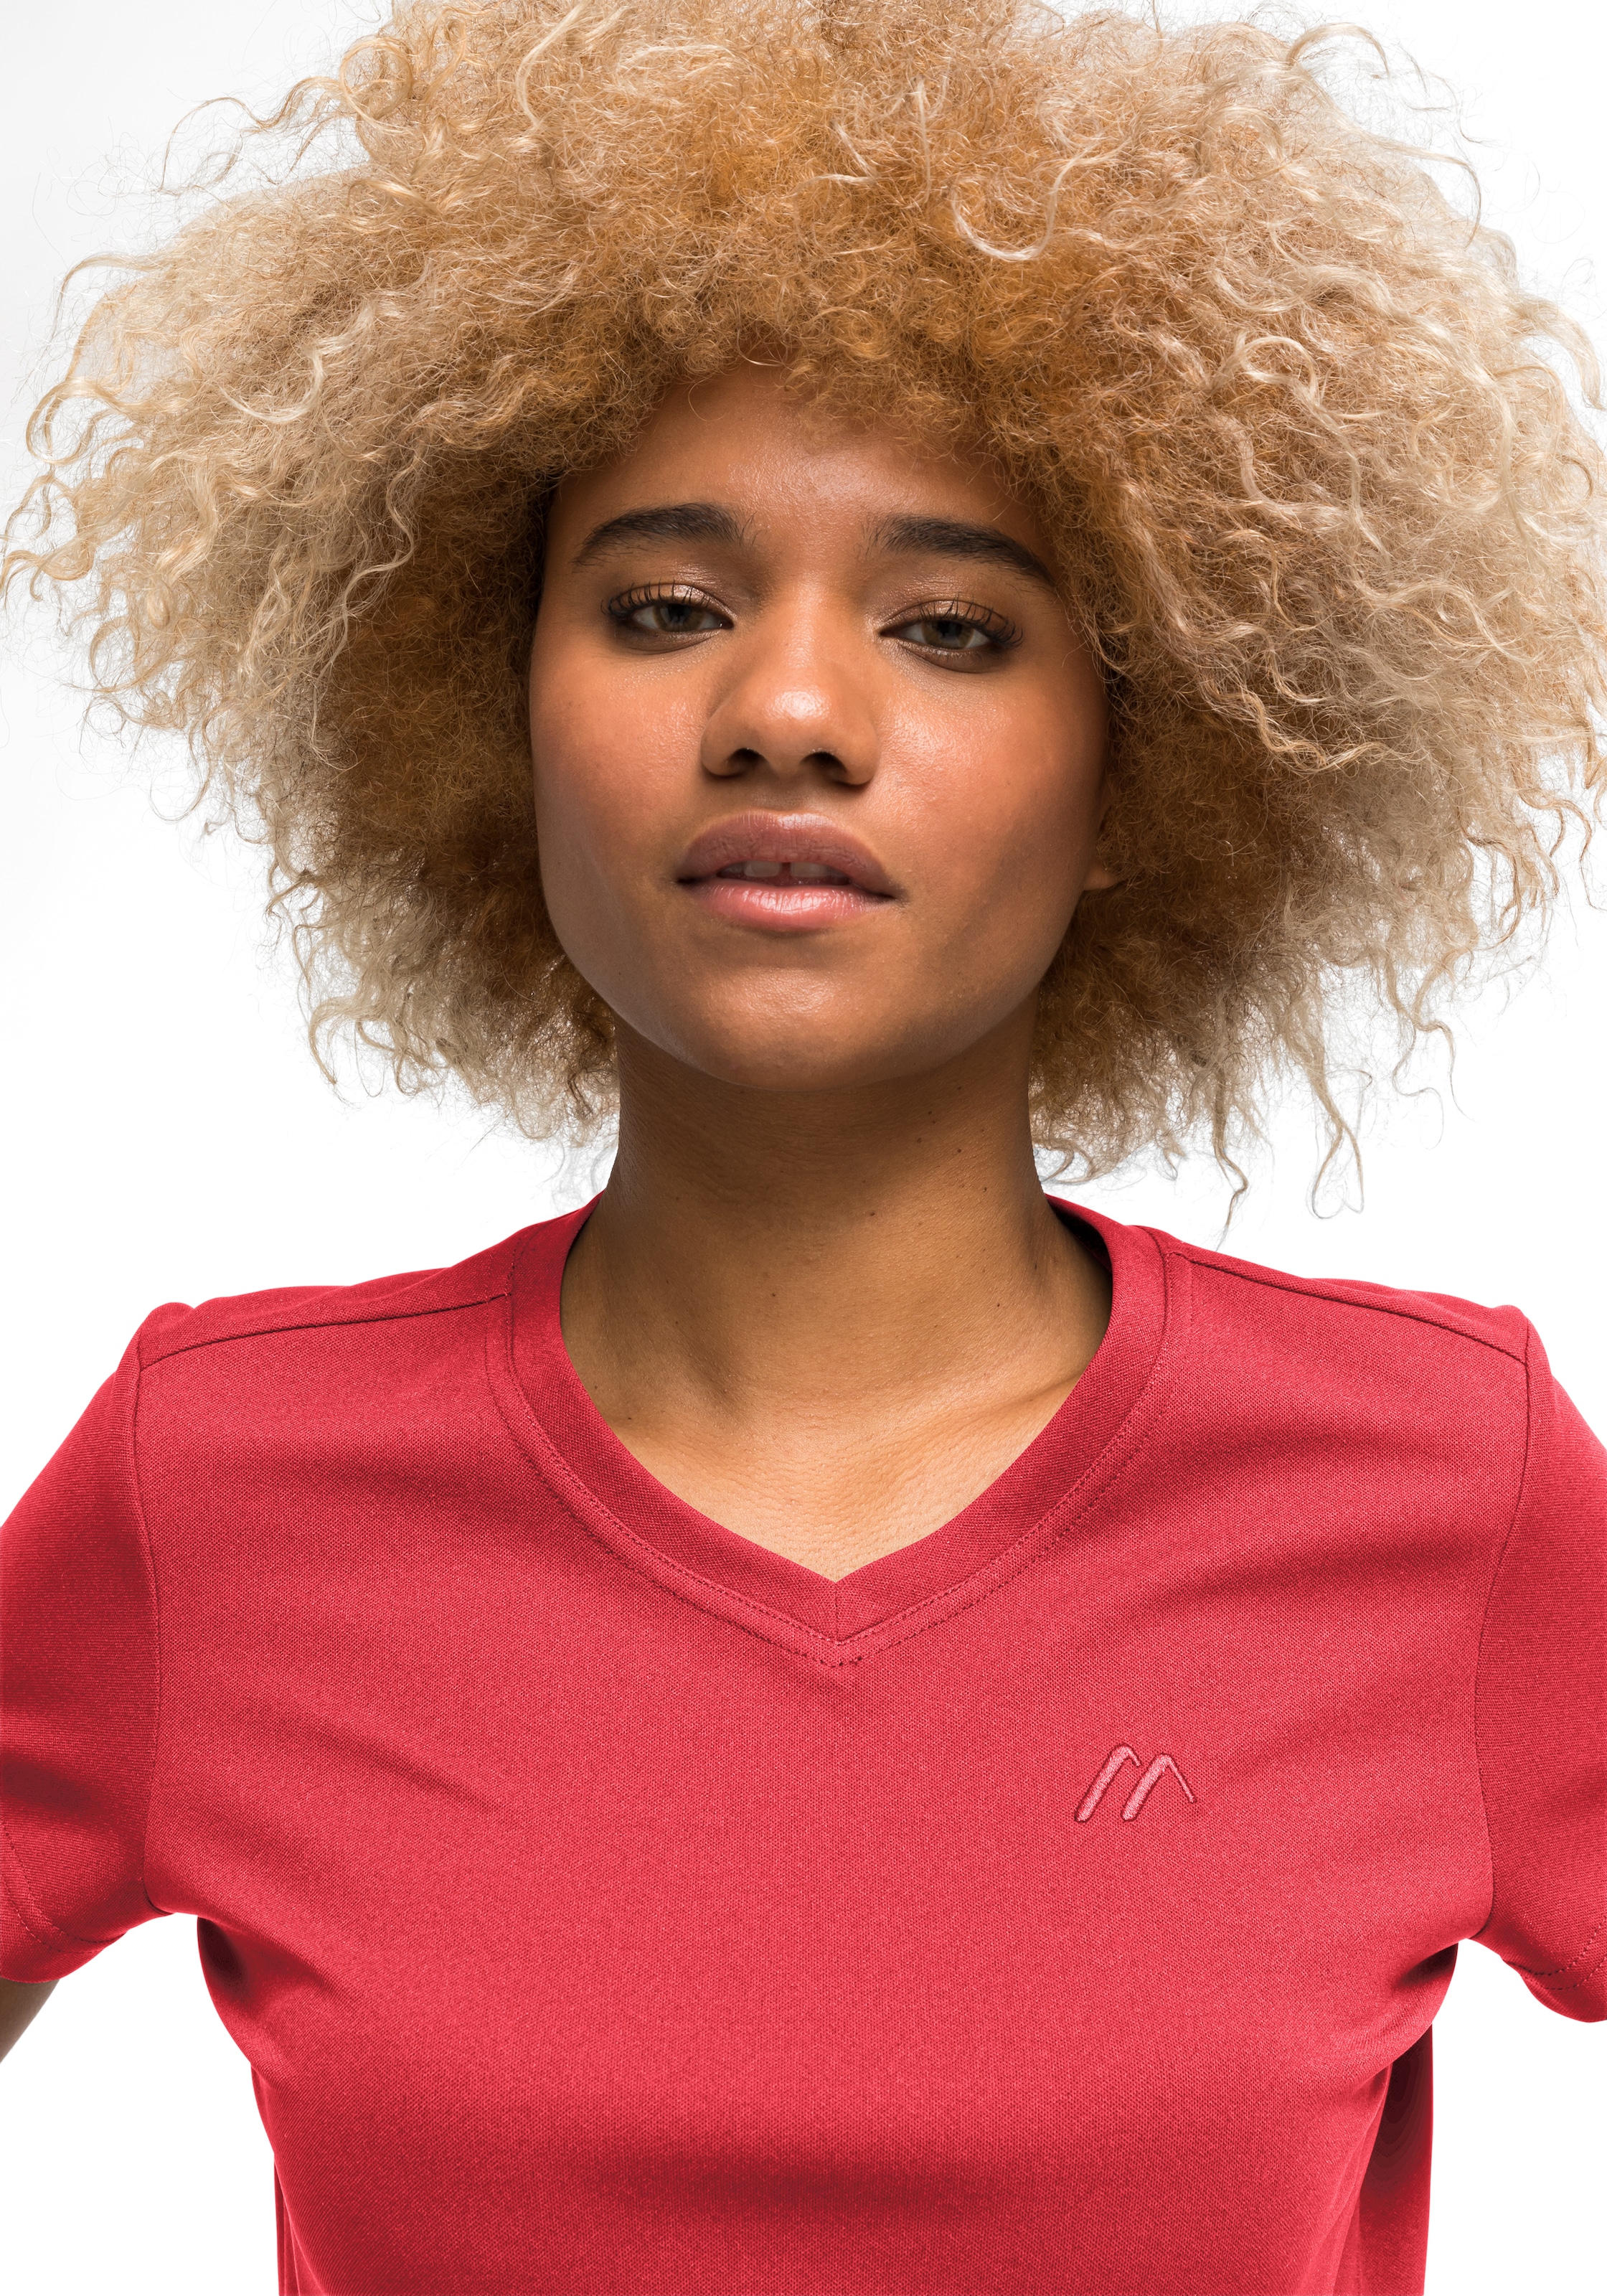 Maier Sports Funktionsshirt »Trudy«, Damen T-Shirt, Kurzarmshirt für  Wandern und Freizeit online kaufen